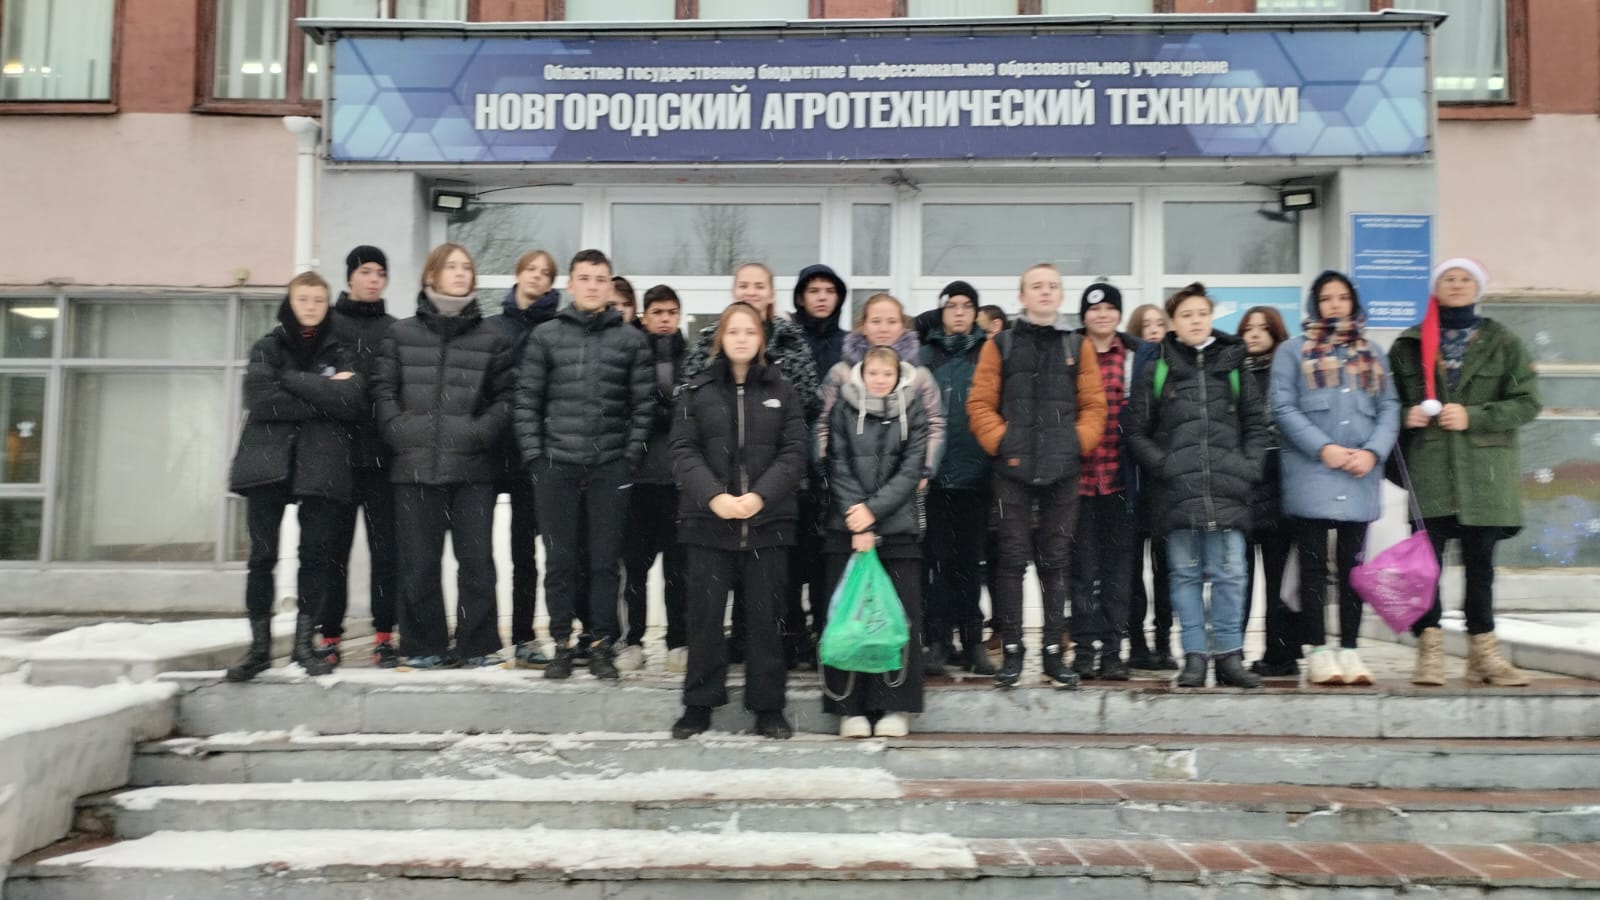 21 декабря учащиеся МАОУ &amp;quot;Савинская ООШ&amp;quot; посетили Новгородский агротехнический техникум..